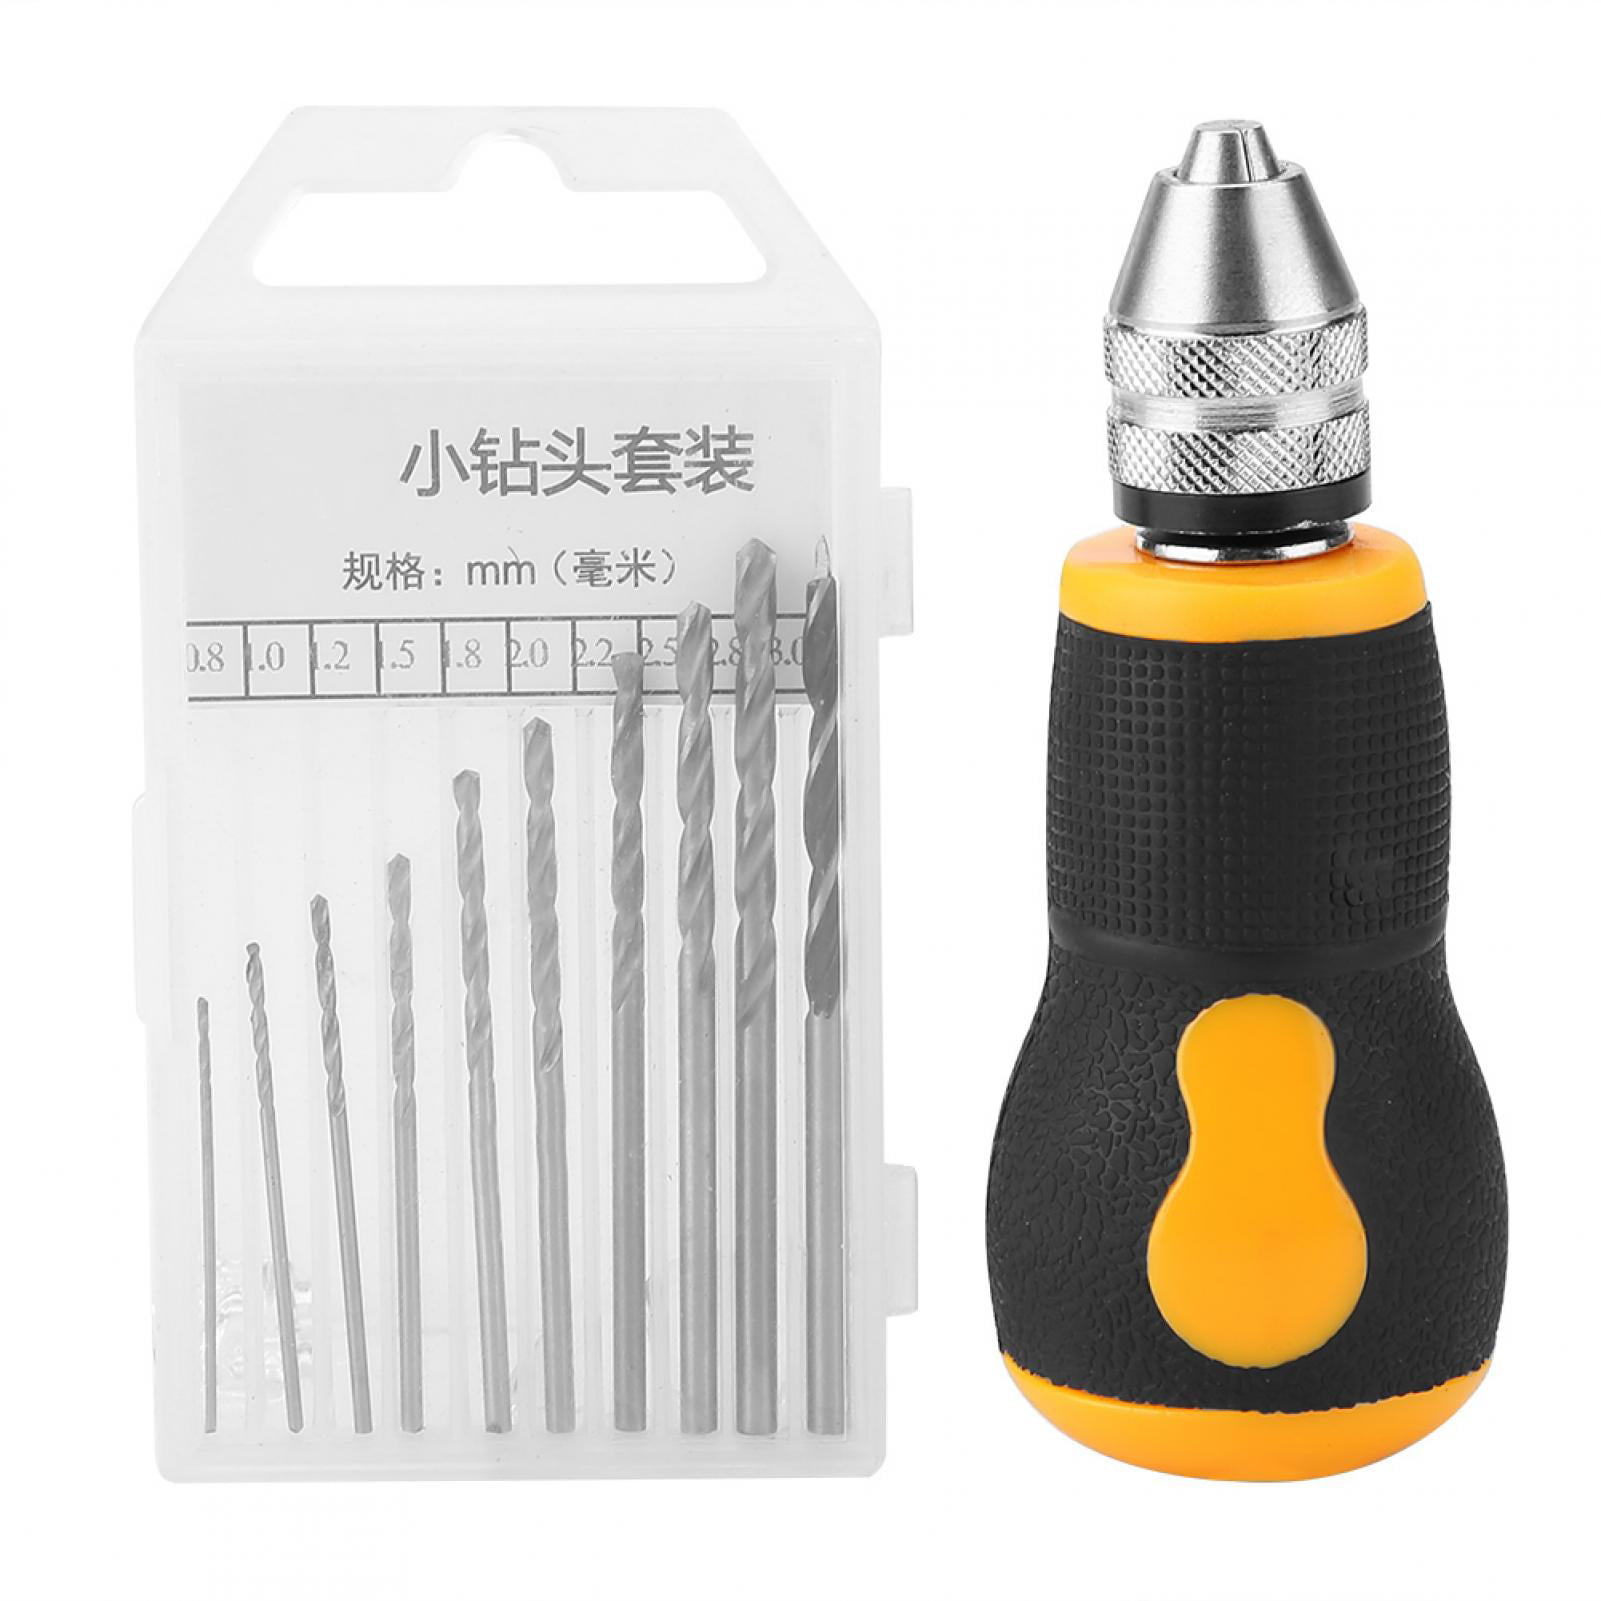 Mgaxyff Hand Drill, Mini Hand Drill,Micro Mini Portable Tool Set Small Hand  Drill & 10 pcs Twist Drill Bits 0.8-3.0mm